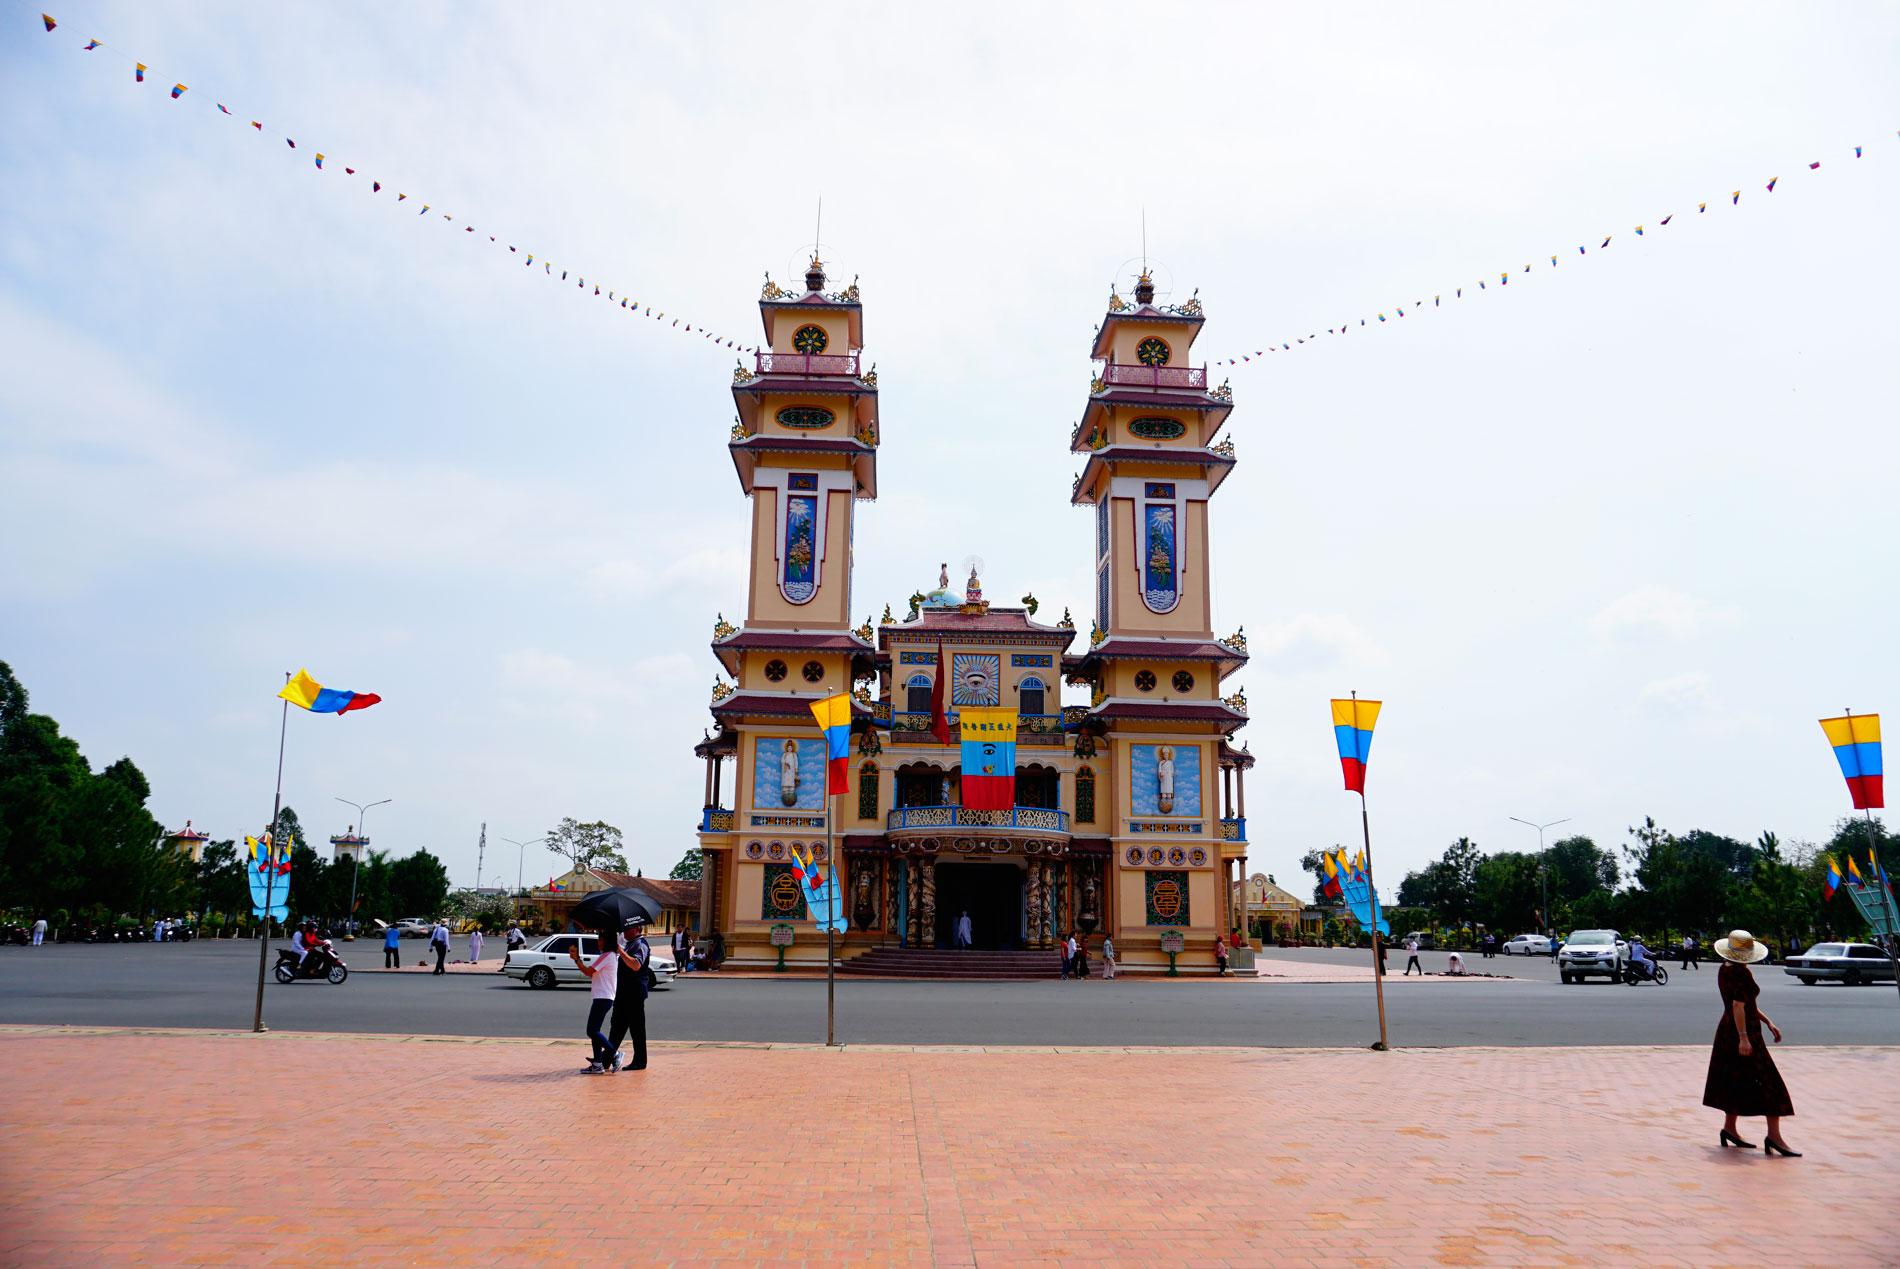 Ngày 17/02/2018, Tour du lịch PN Travel quyết định khám phá Tòa Thánh cốt tre nổi tiếng thế giới ở Tây Ninh.